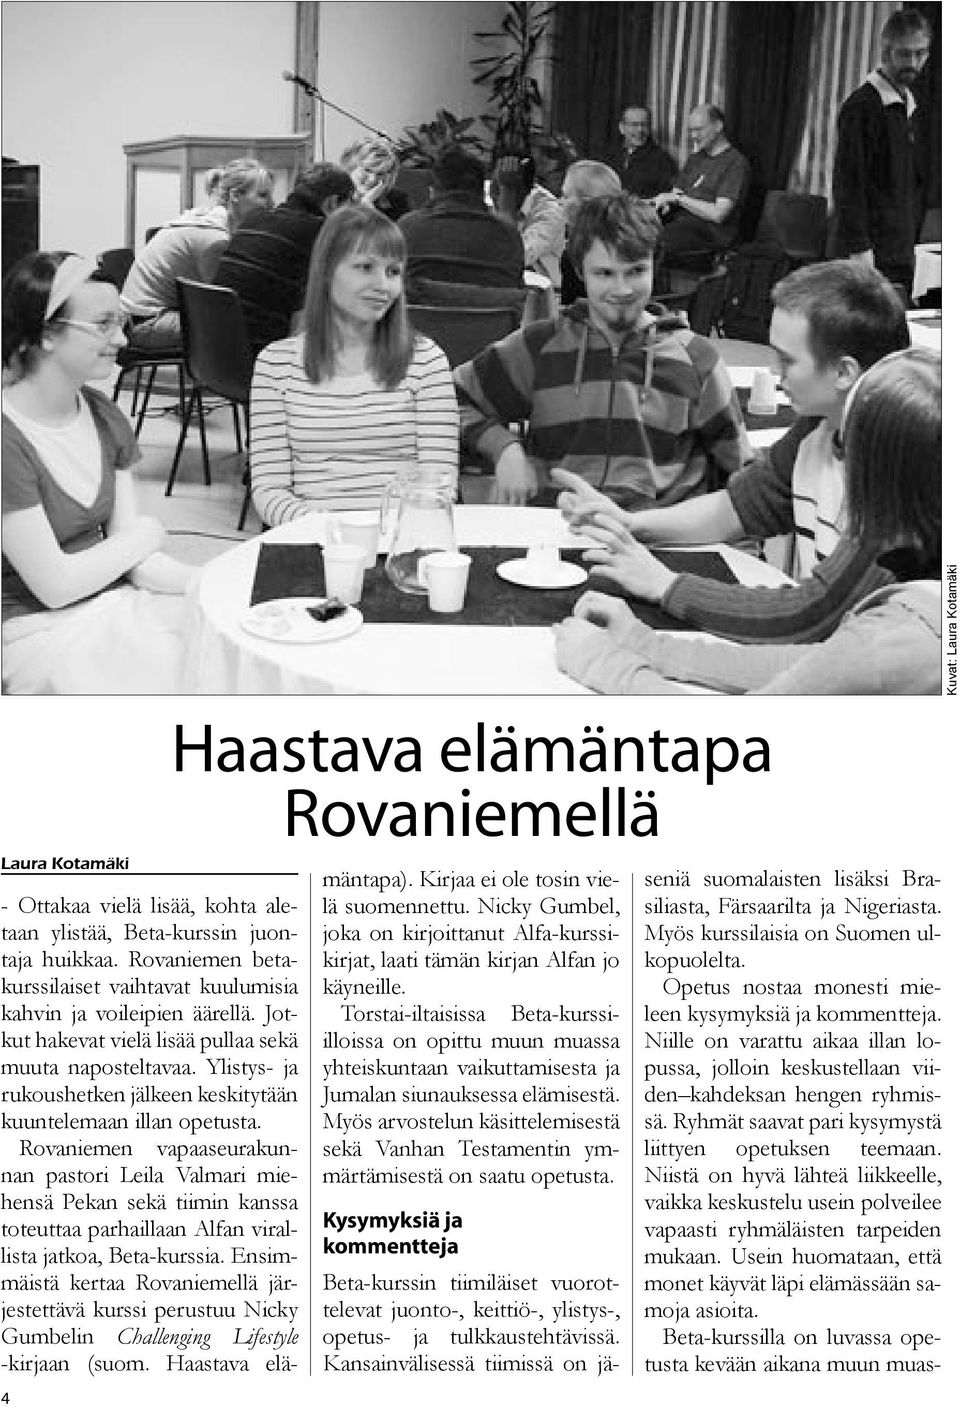 Rovaniemen vapaaseurakunnan pastori Leila Valmari miehensä Pekan sekä tiimin kanssa toteuttaa parhaillaan Alfan virallista jatkoa, Beta-kurssia.